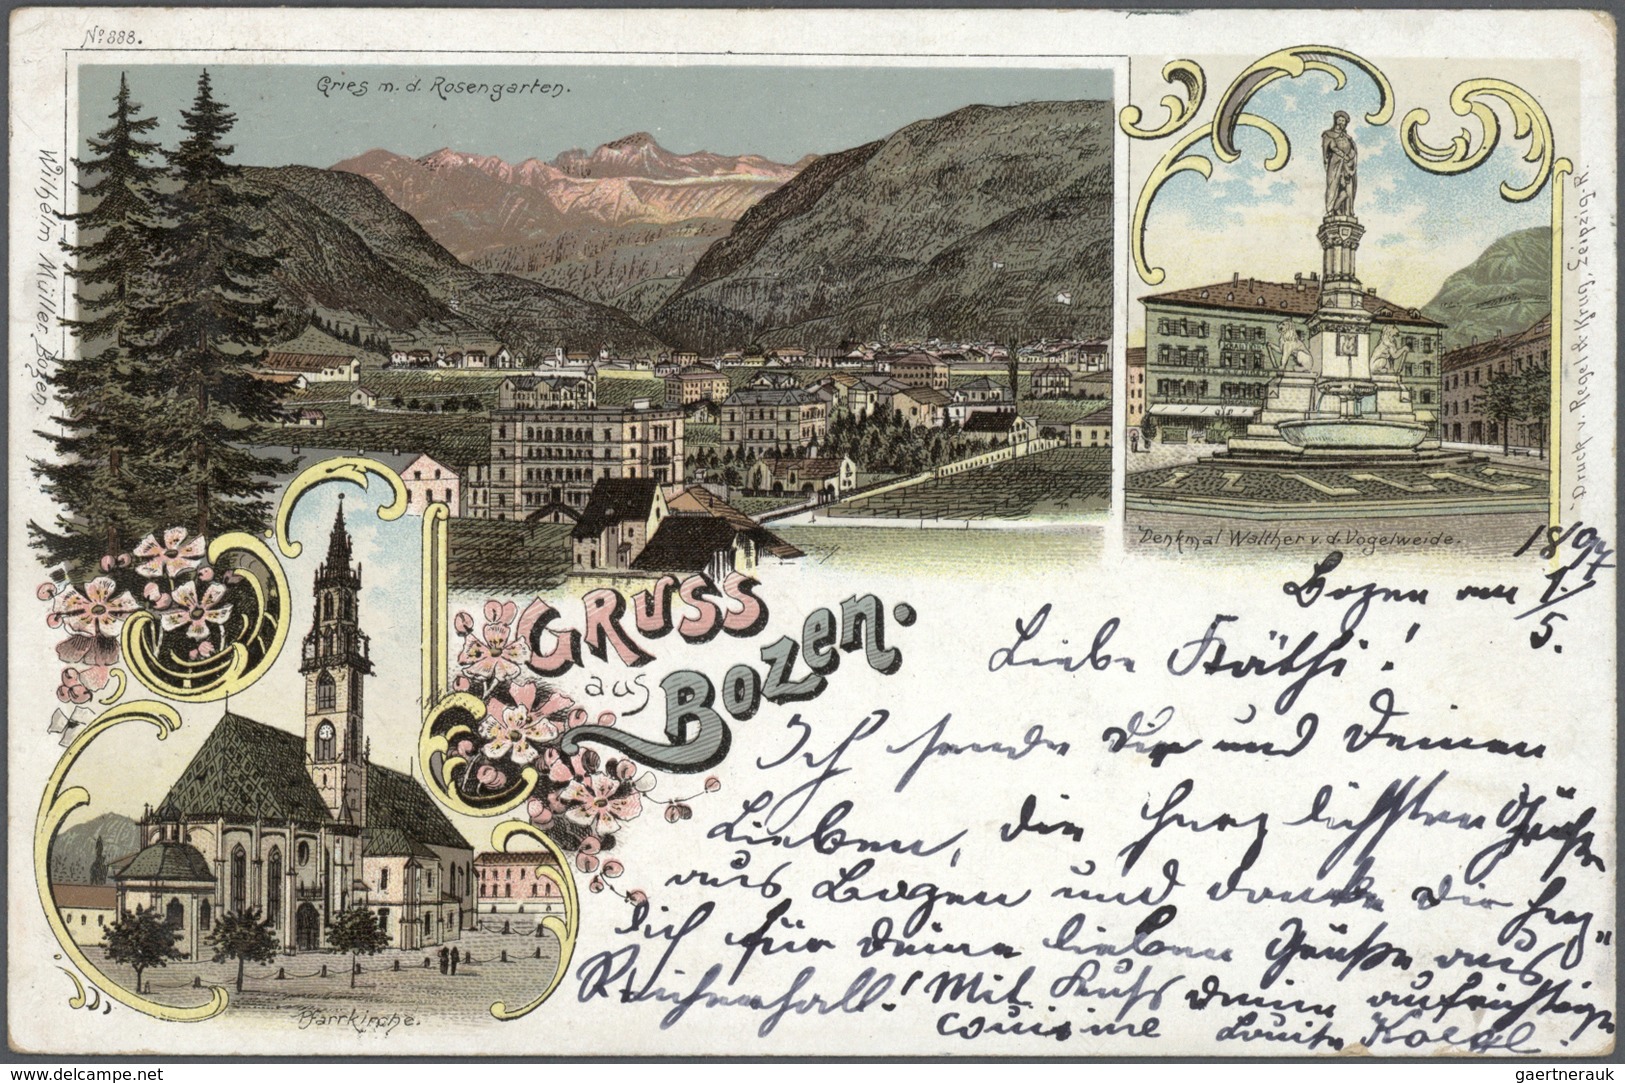 Ansichtskarten: Österreich: 1893/1940 (ca.), Partie von ca. 180 Topographie-Karten incl. Südtirol, a